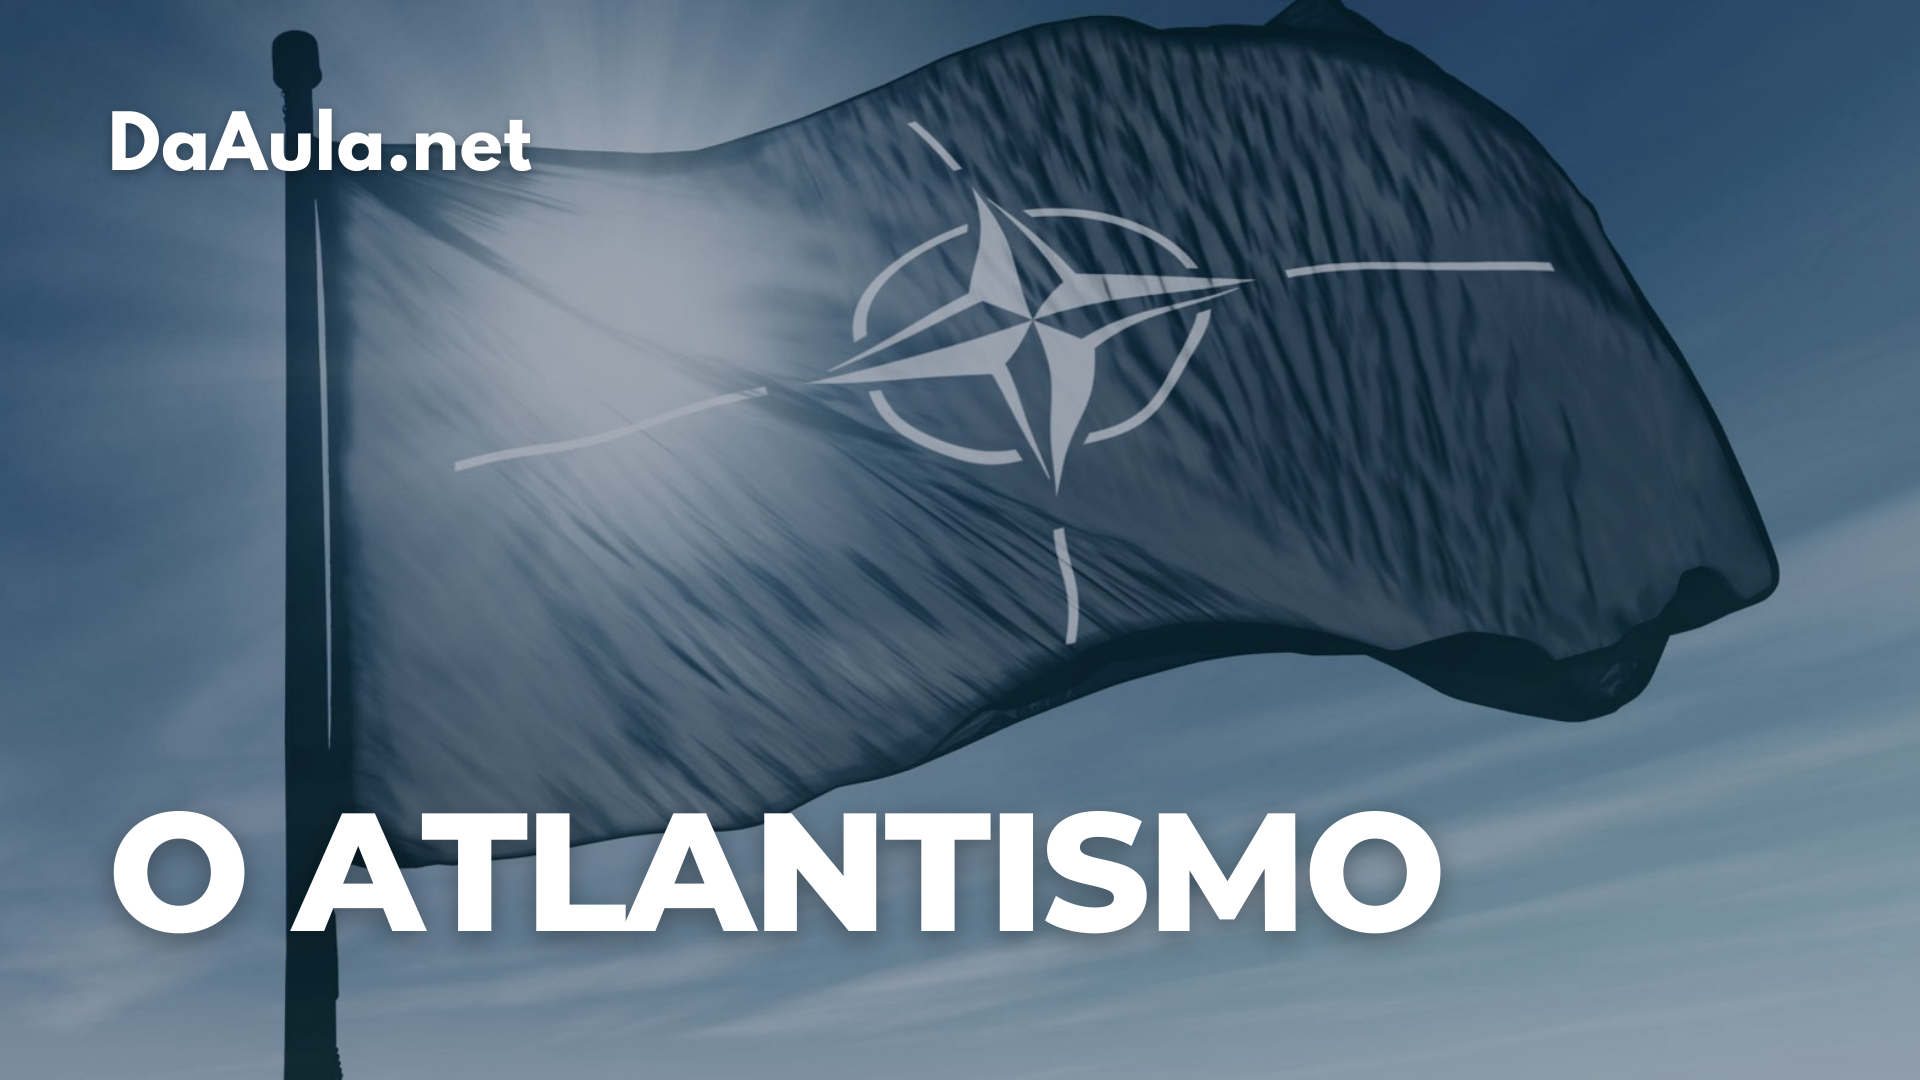 O pacto militar-estratégico da OTAN (Organização do Tratado Atlântico Norte)